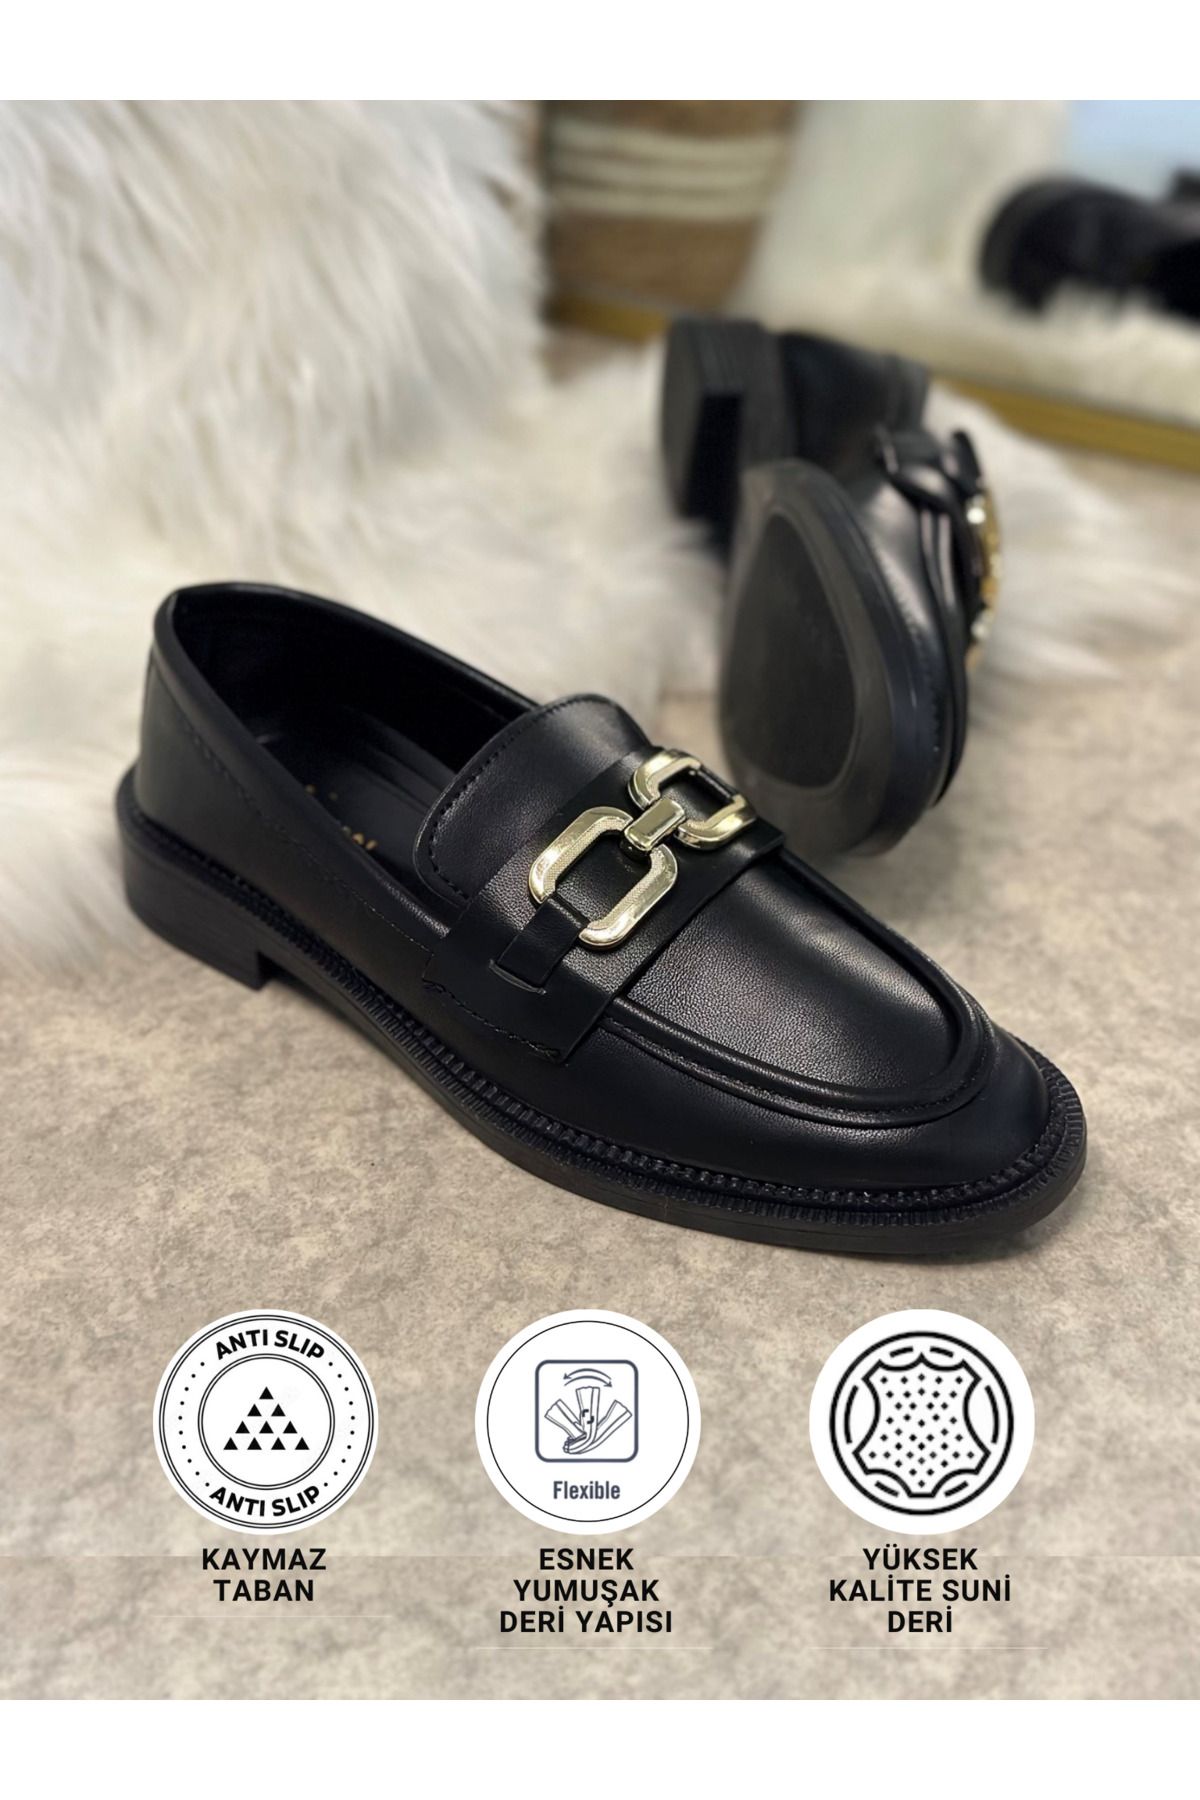 İmerShoes Günlük Kadın Siyah Cilt Loafer Klasik Kısa Topuklu Zincirli Oval Burunlu Makosen Ayakkabı 100